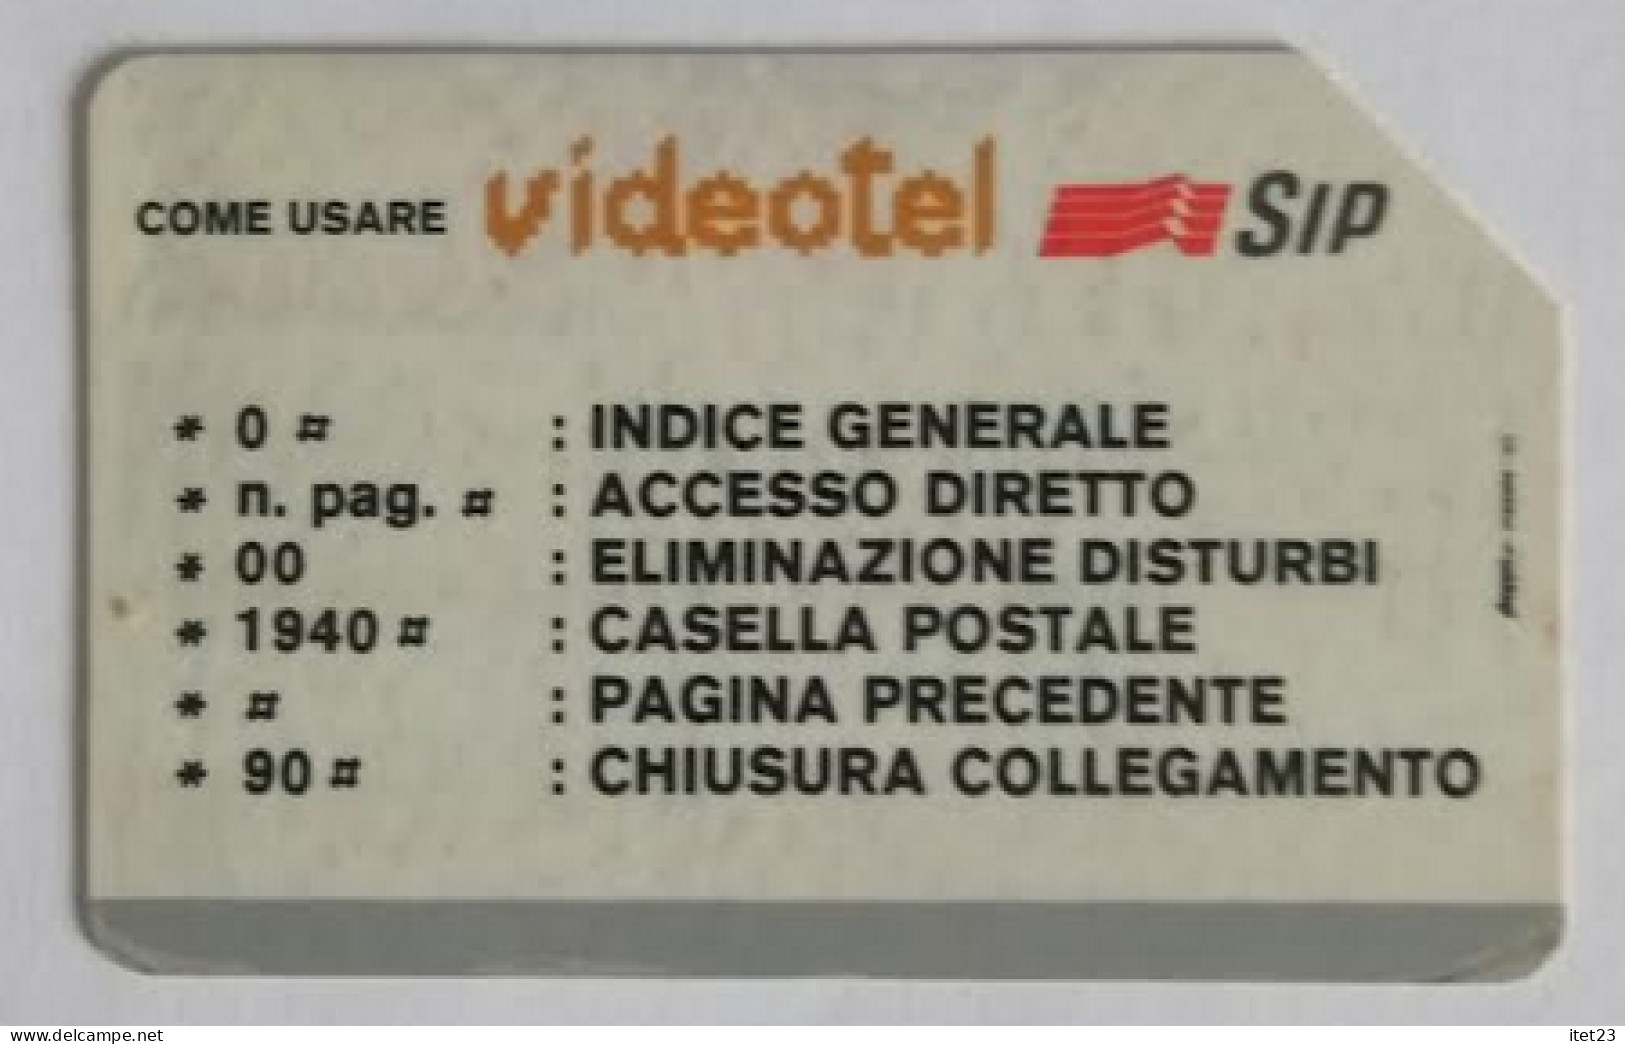 SCHEDA TELEFONICA ITALIANA - USI SPECIALI  VIDEOTEL SIP- C&C 4009 - [4] Sammlungen